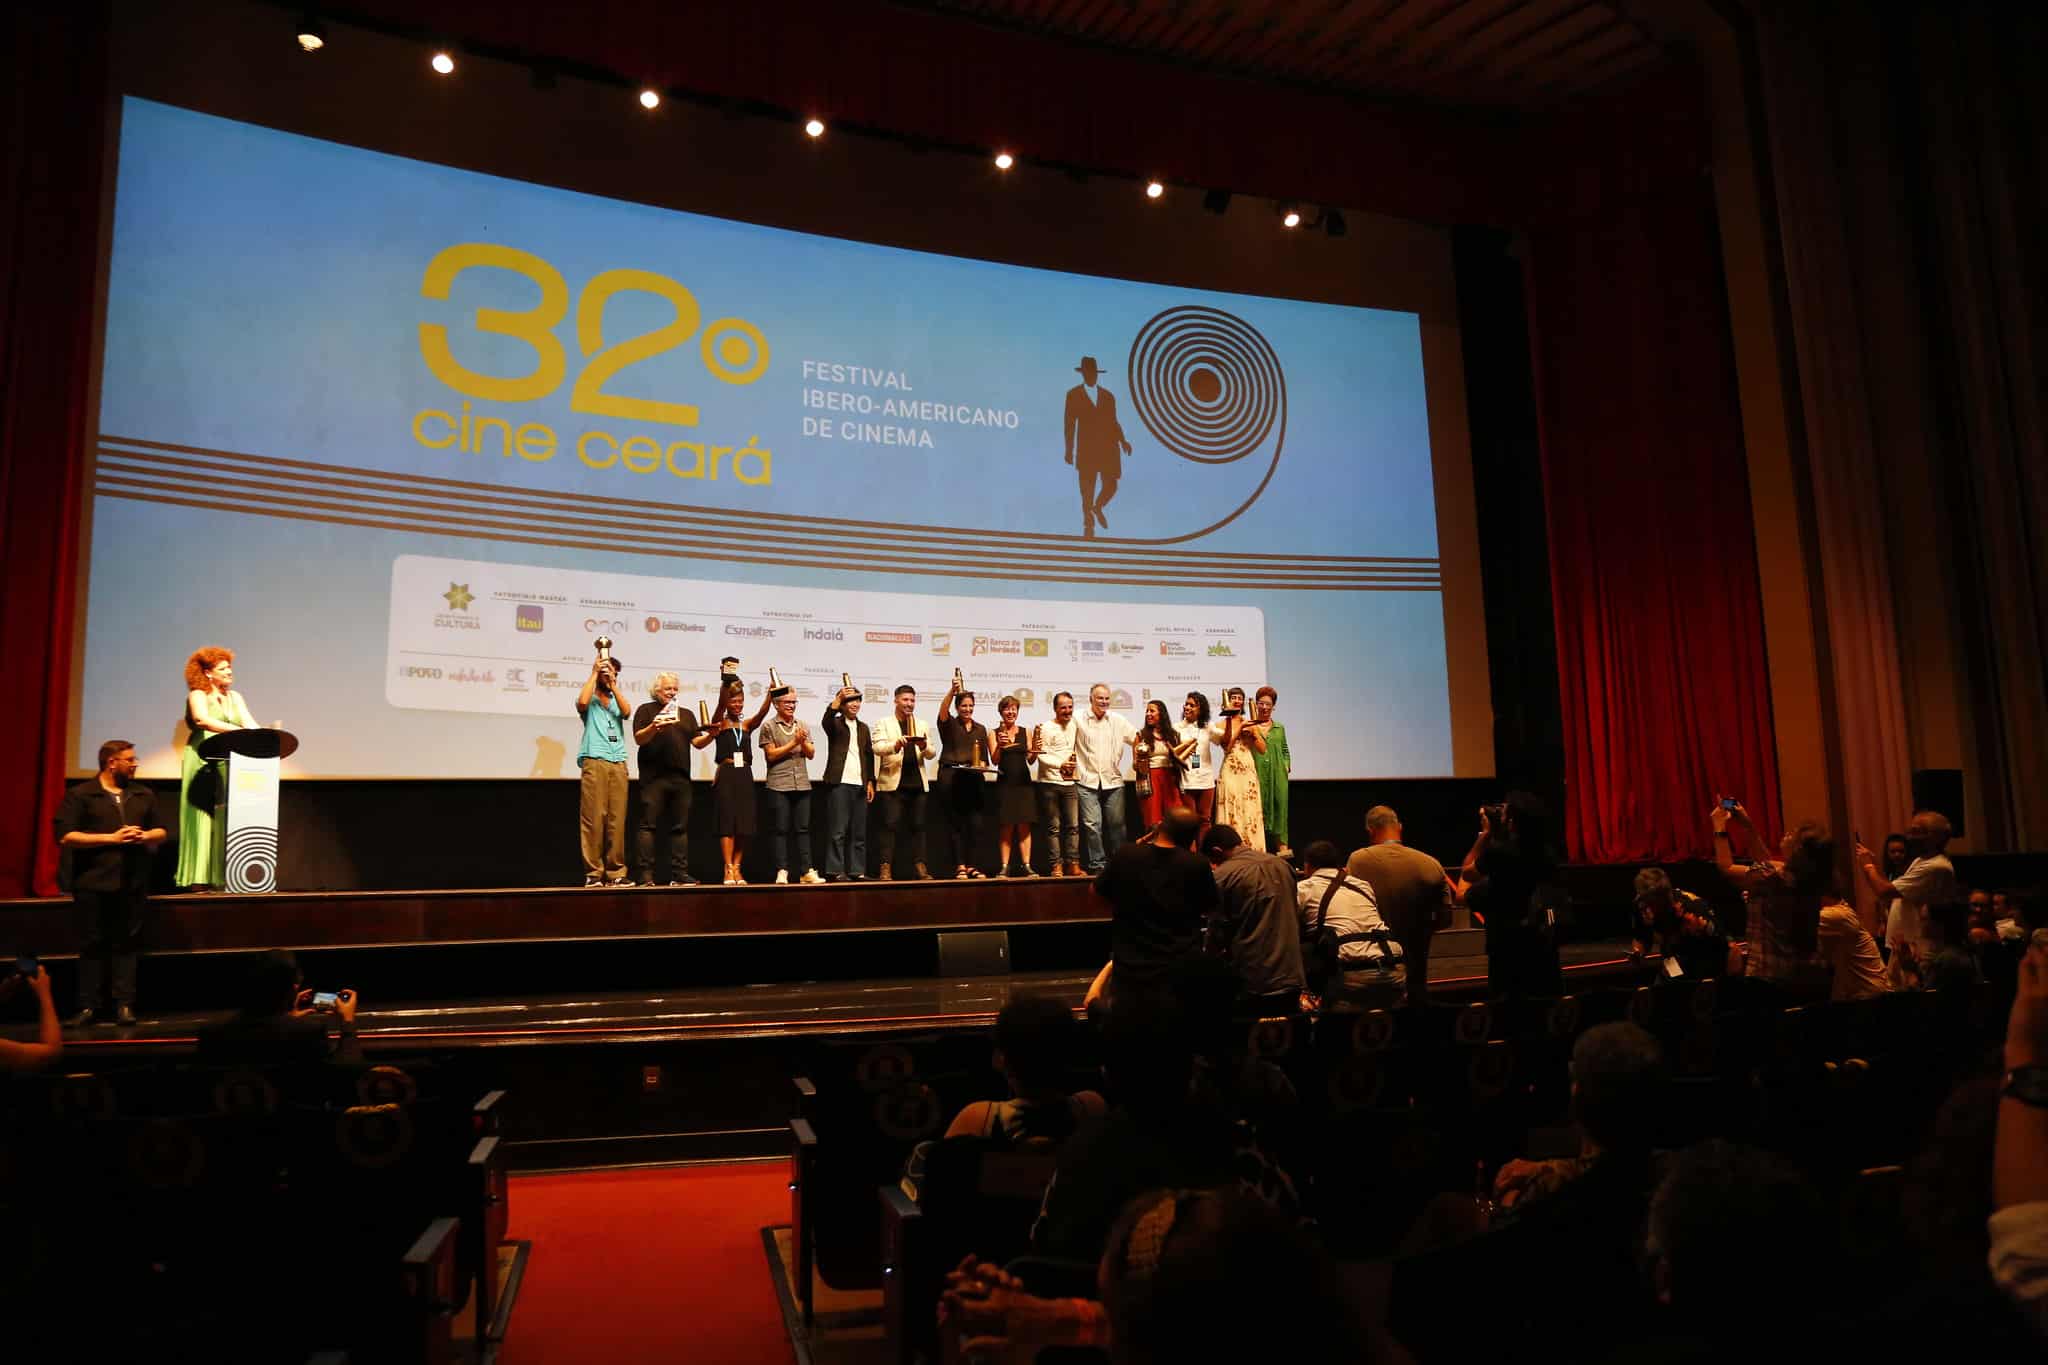 33º Cine Ceará está com inscrições abertas para mostras competitivas de longa e curta-metragem